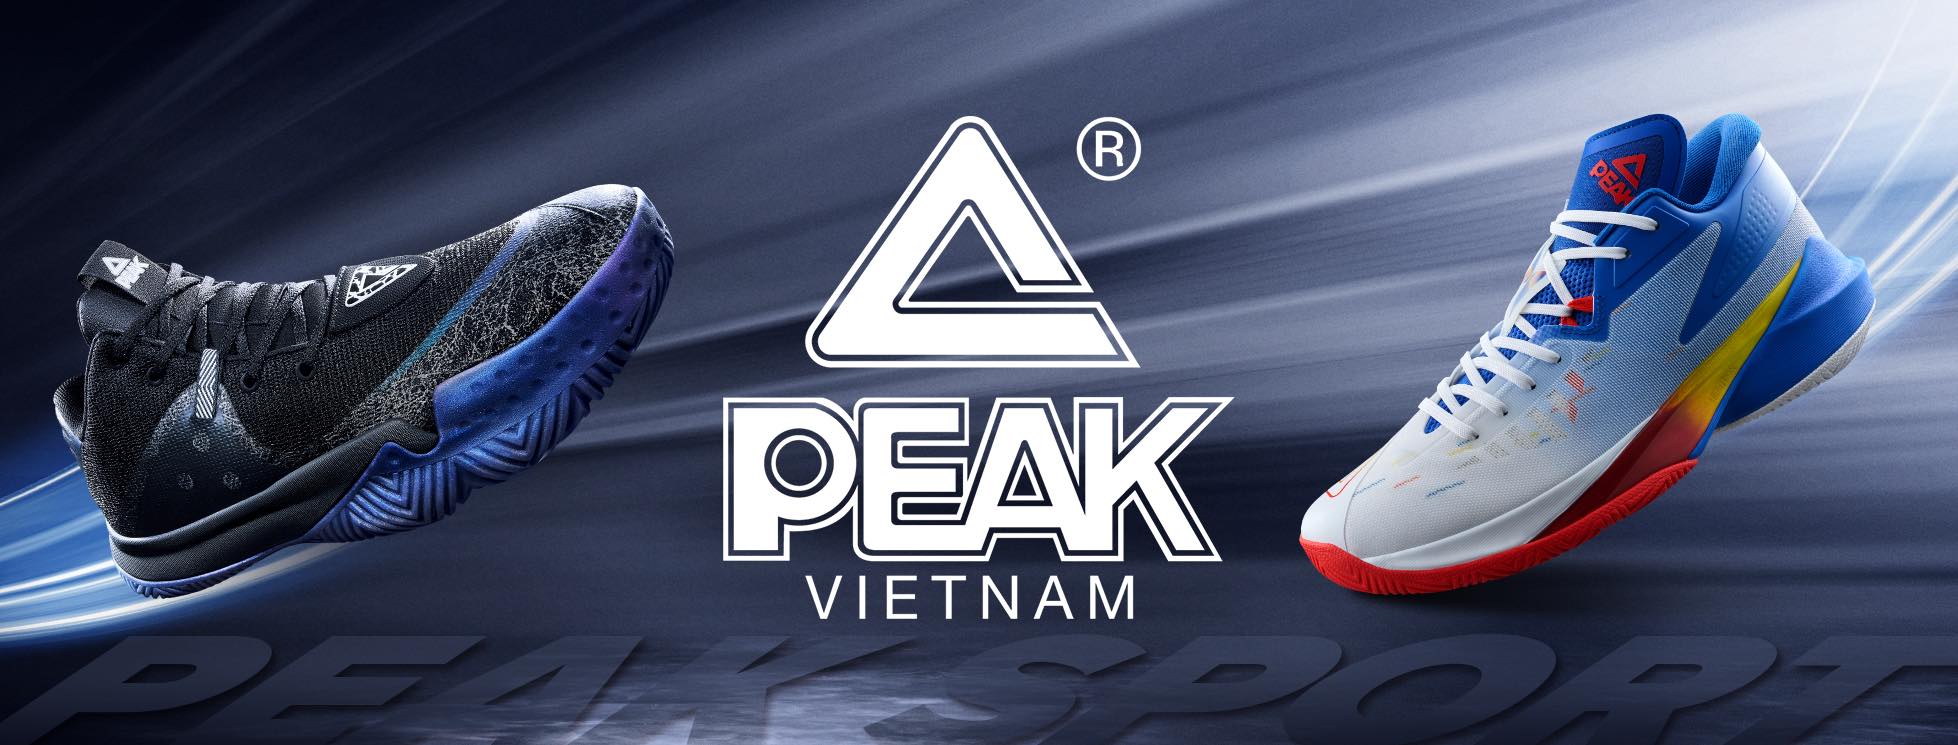 Peaksport Shopee Là 1 Trong Những Nhãn Hàng Thời Trang Thể Thao Hàng Đầu Ở Thị Trường Trung Quốc Trong Lĩnh Vực Sản Xuất Giày Bóng Rổ Nổi Tiếng Trên Toàn Cầu